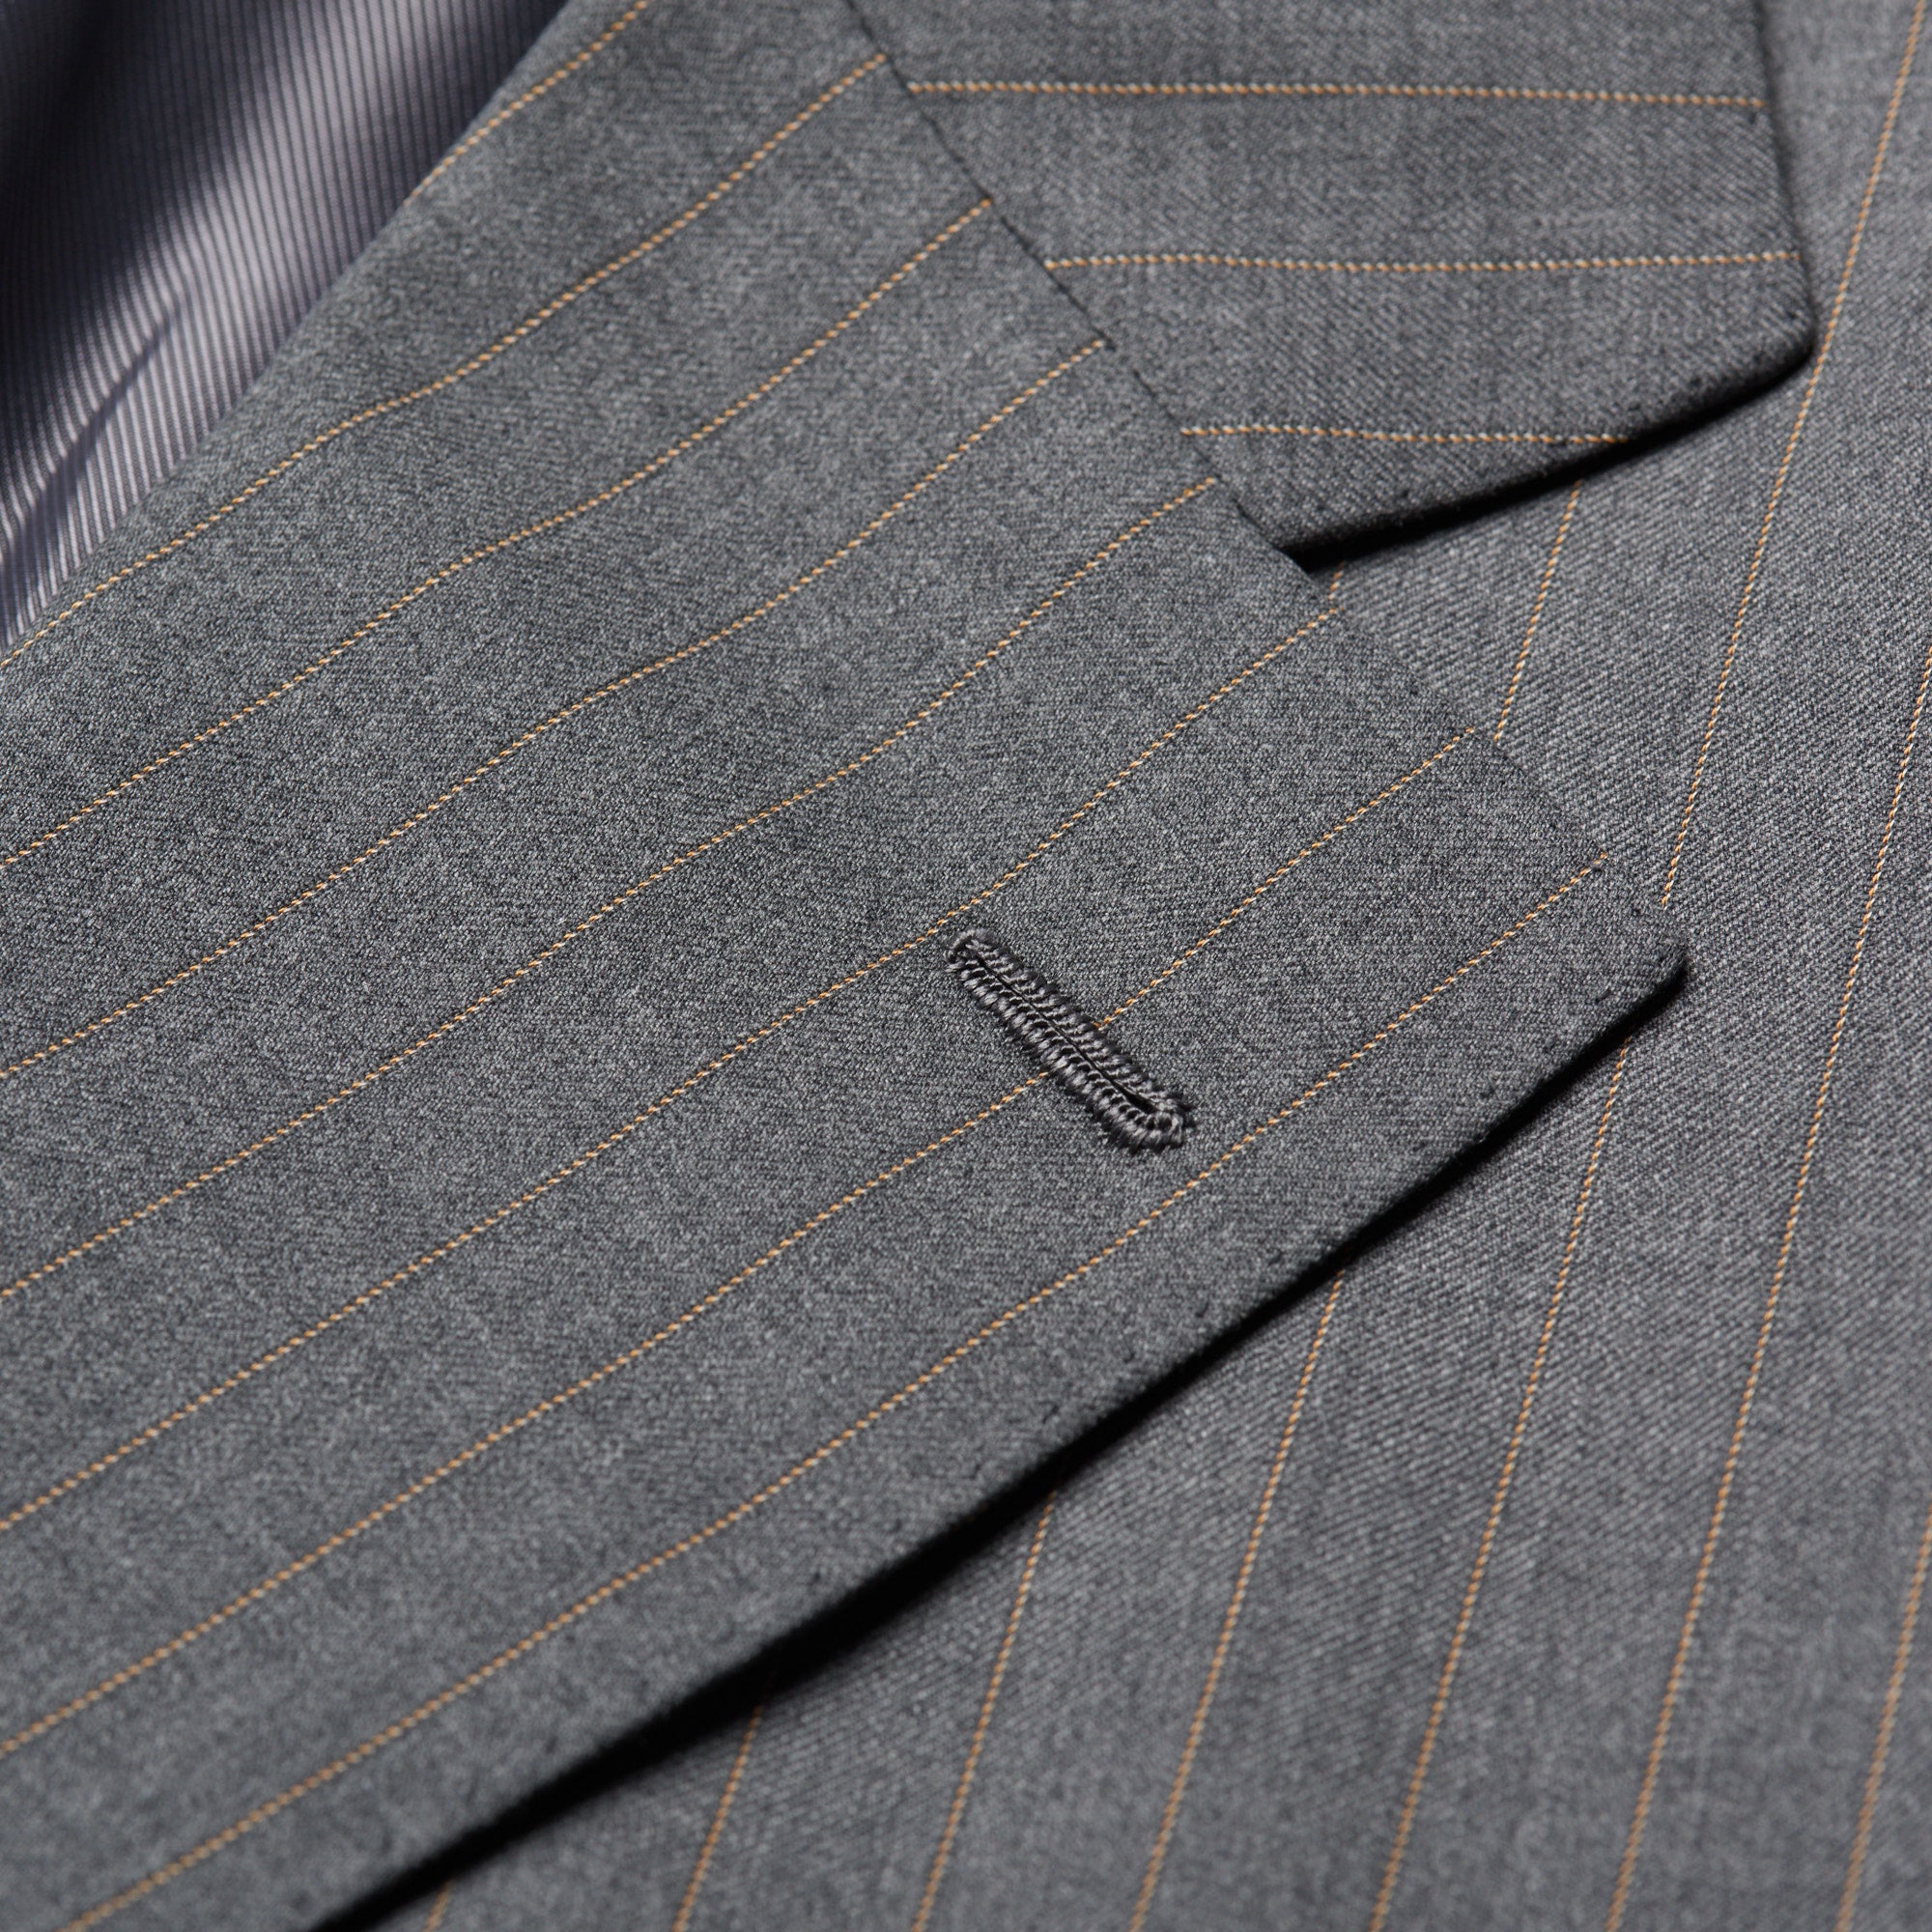 CESARE ATTOLINI Napoli Handmade Gray Striped Wool Super 130's Suit 54 NEW US 44 CESARE ATTOLINI